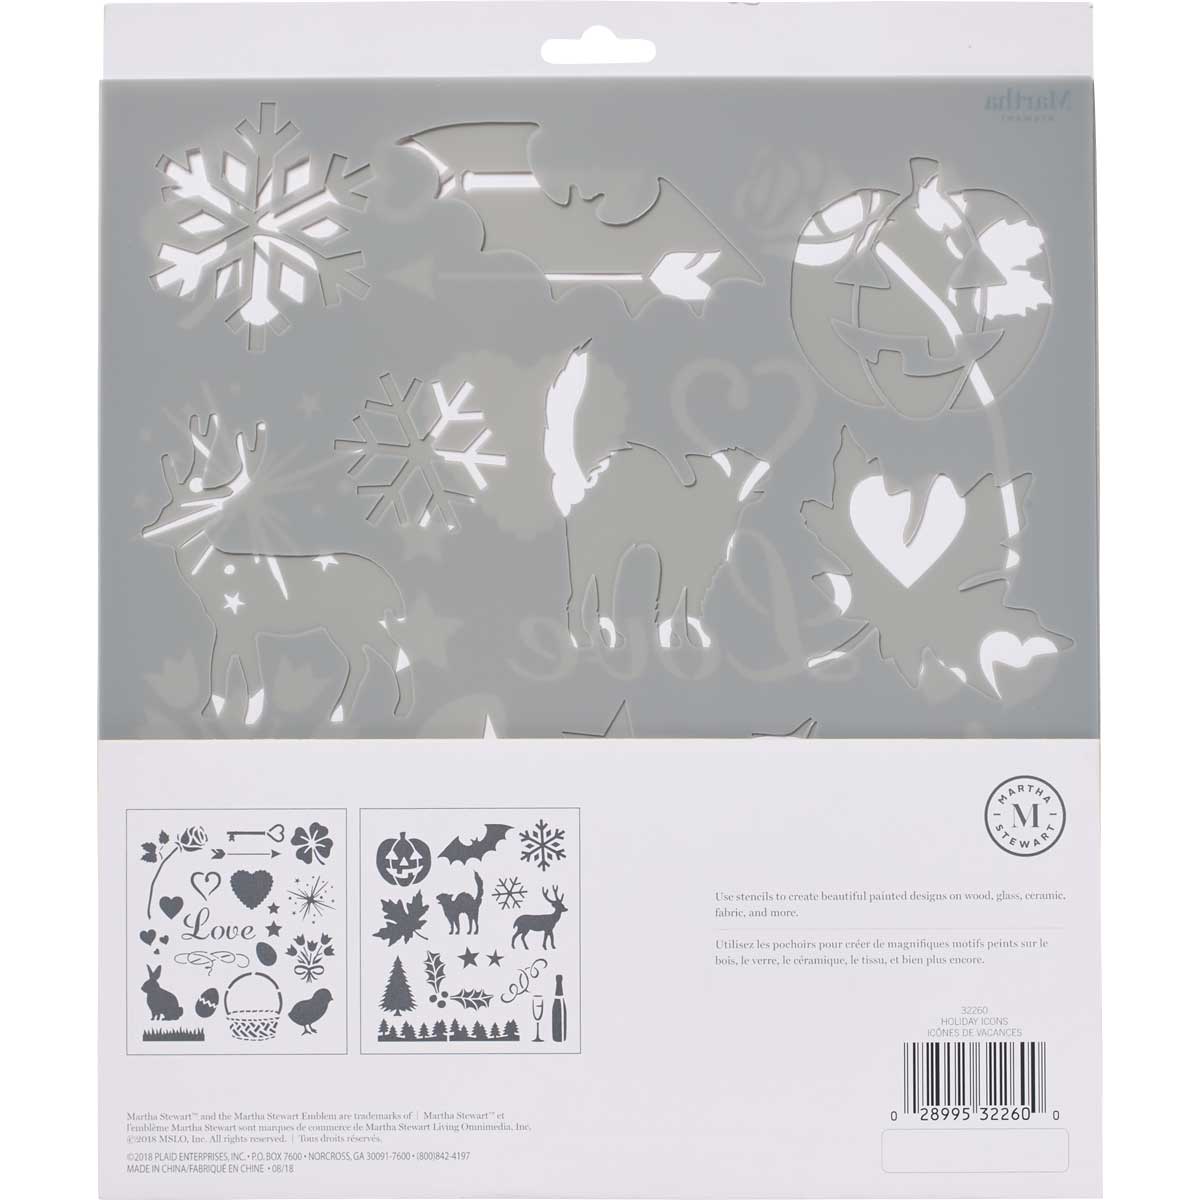 Martha Stewart ® Laser-Cut Stencil - Holiday Icons - 32260